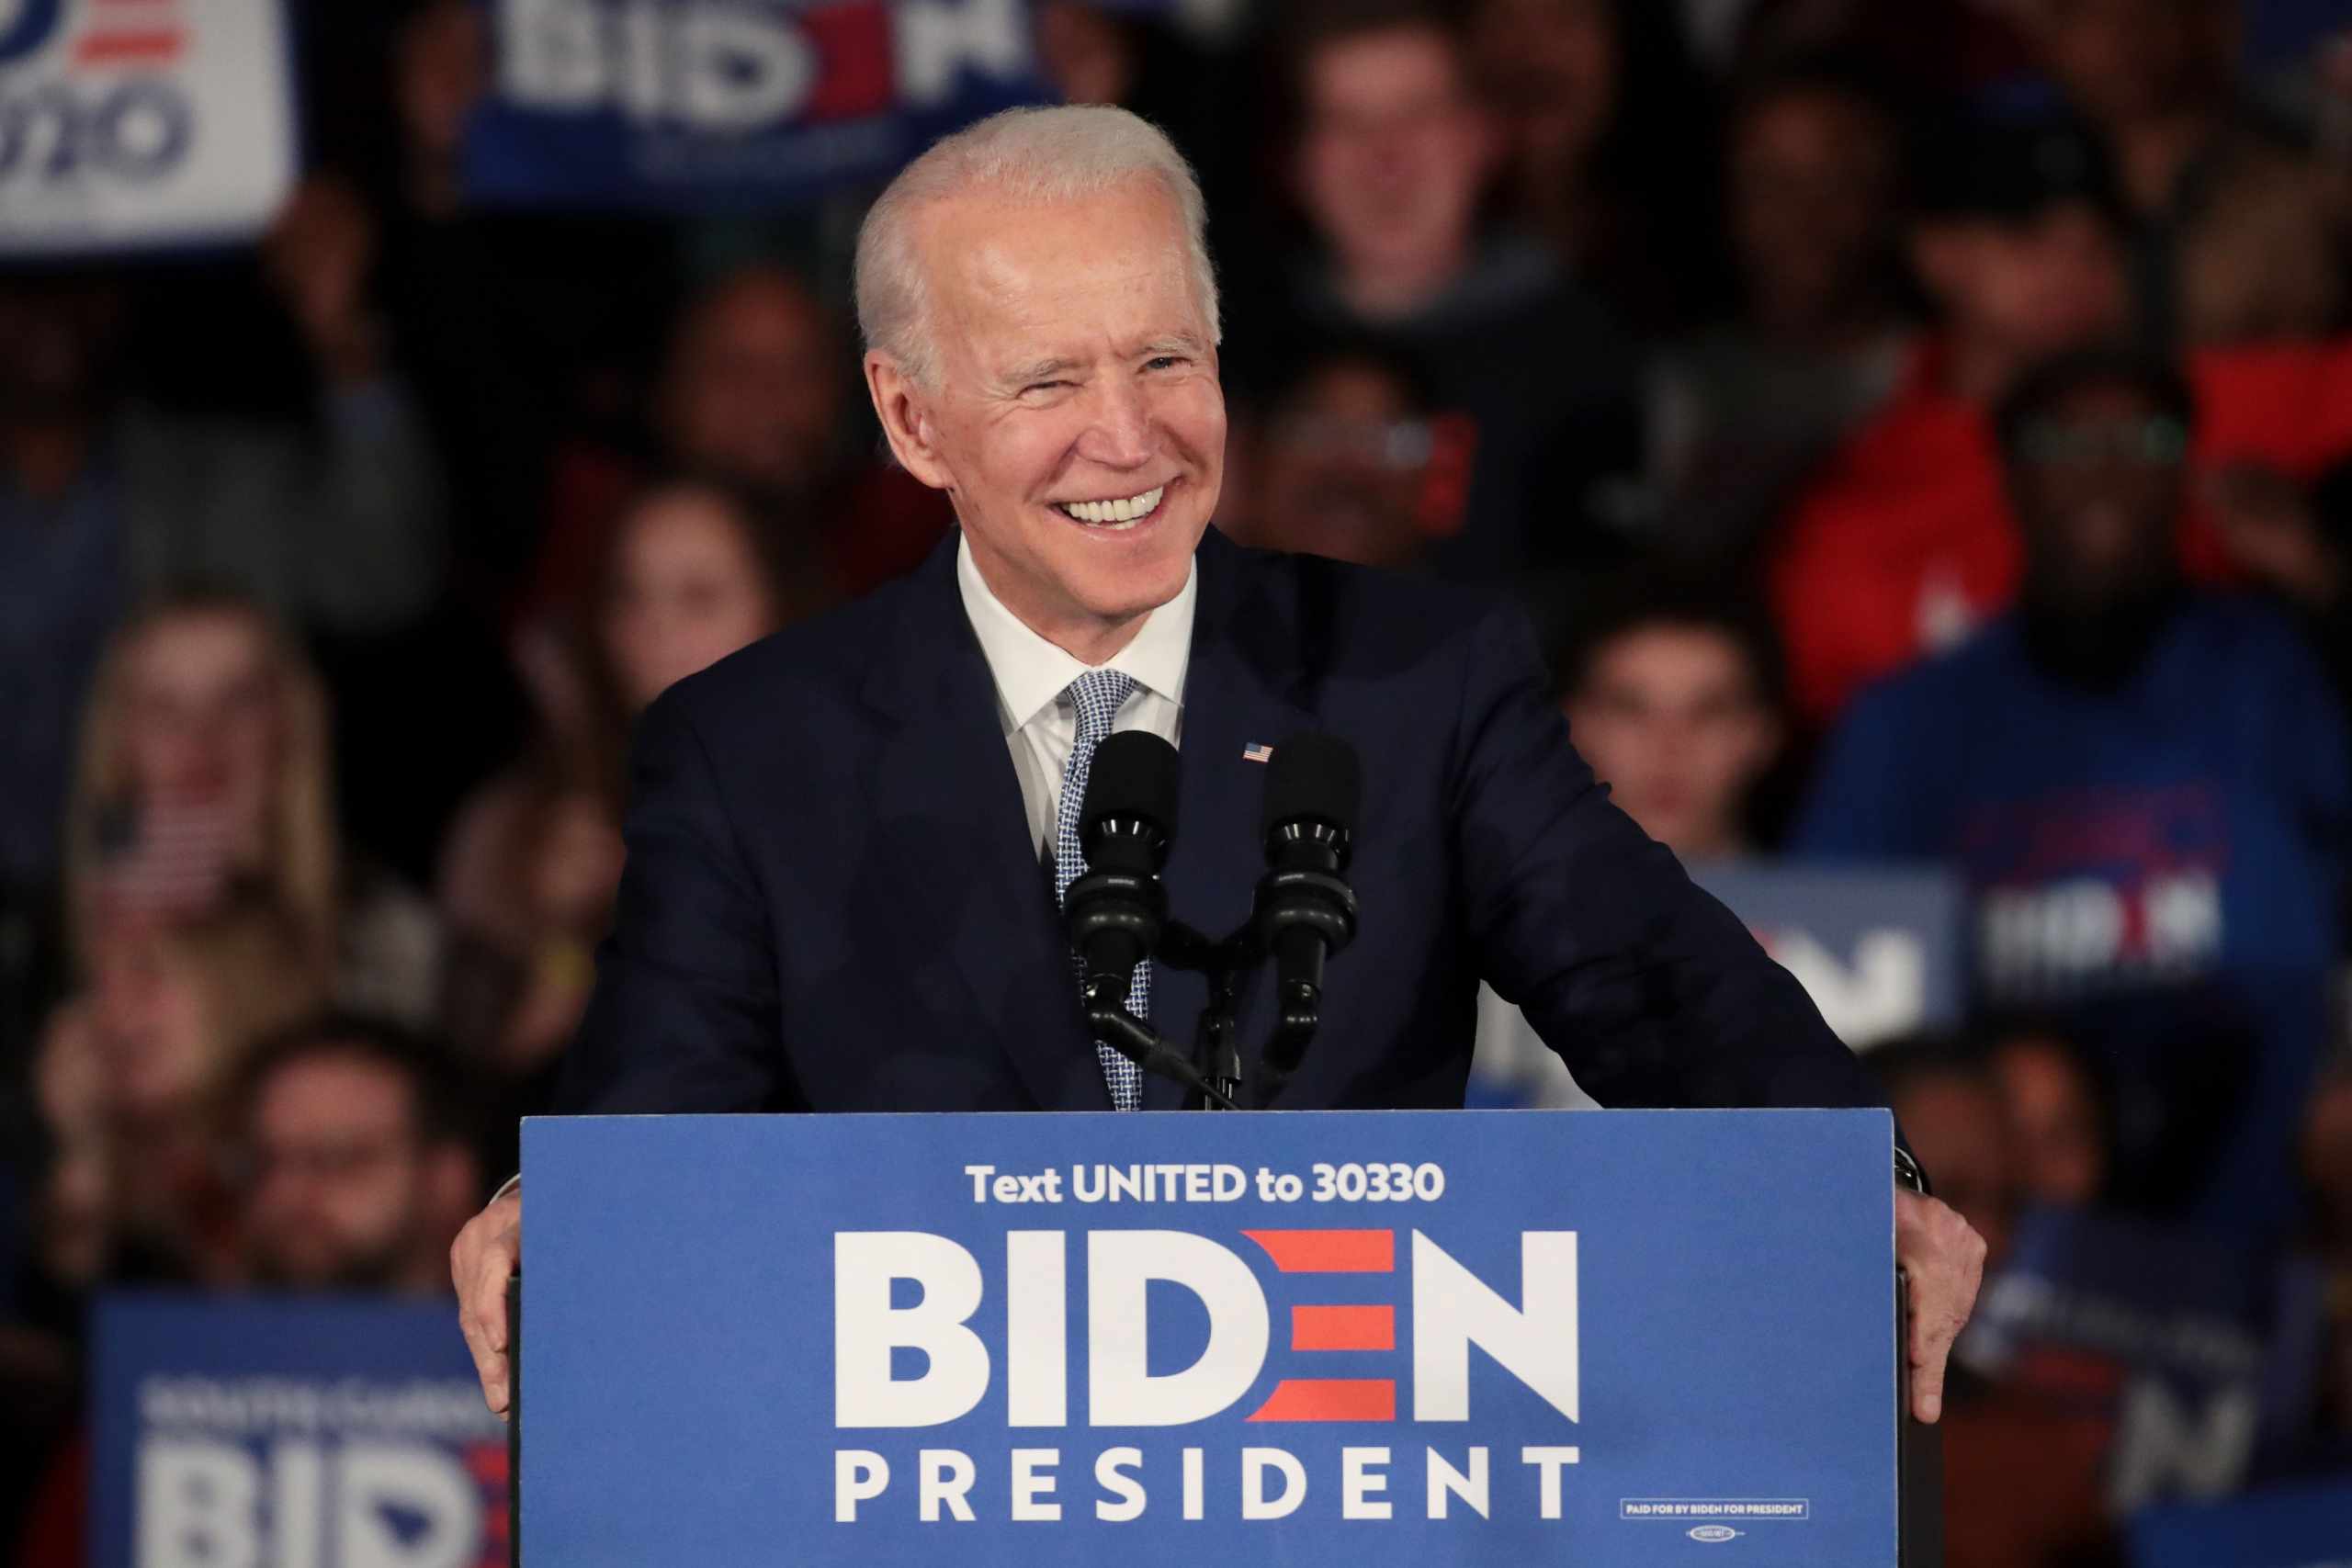 Joe Biden net worth in 2020